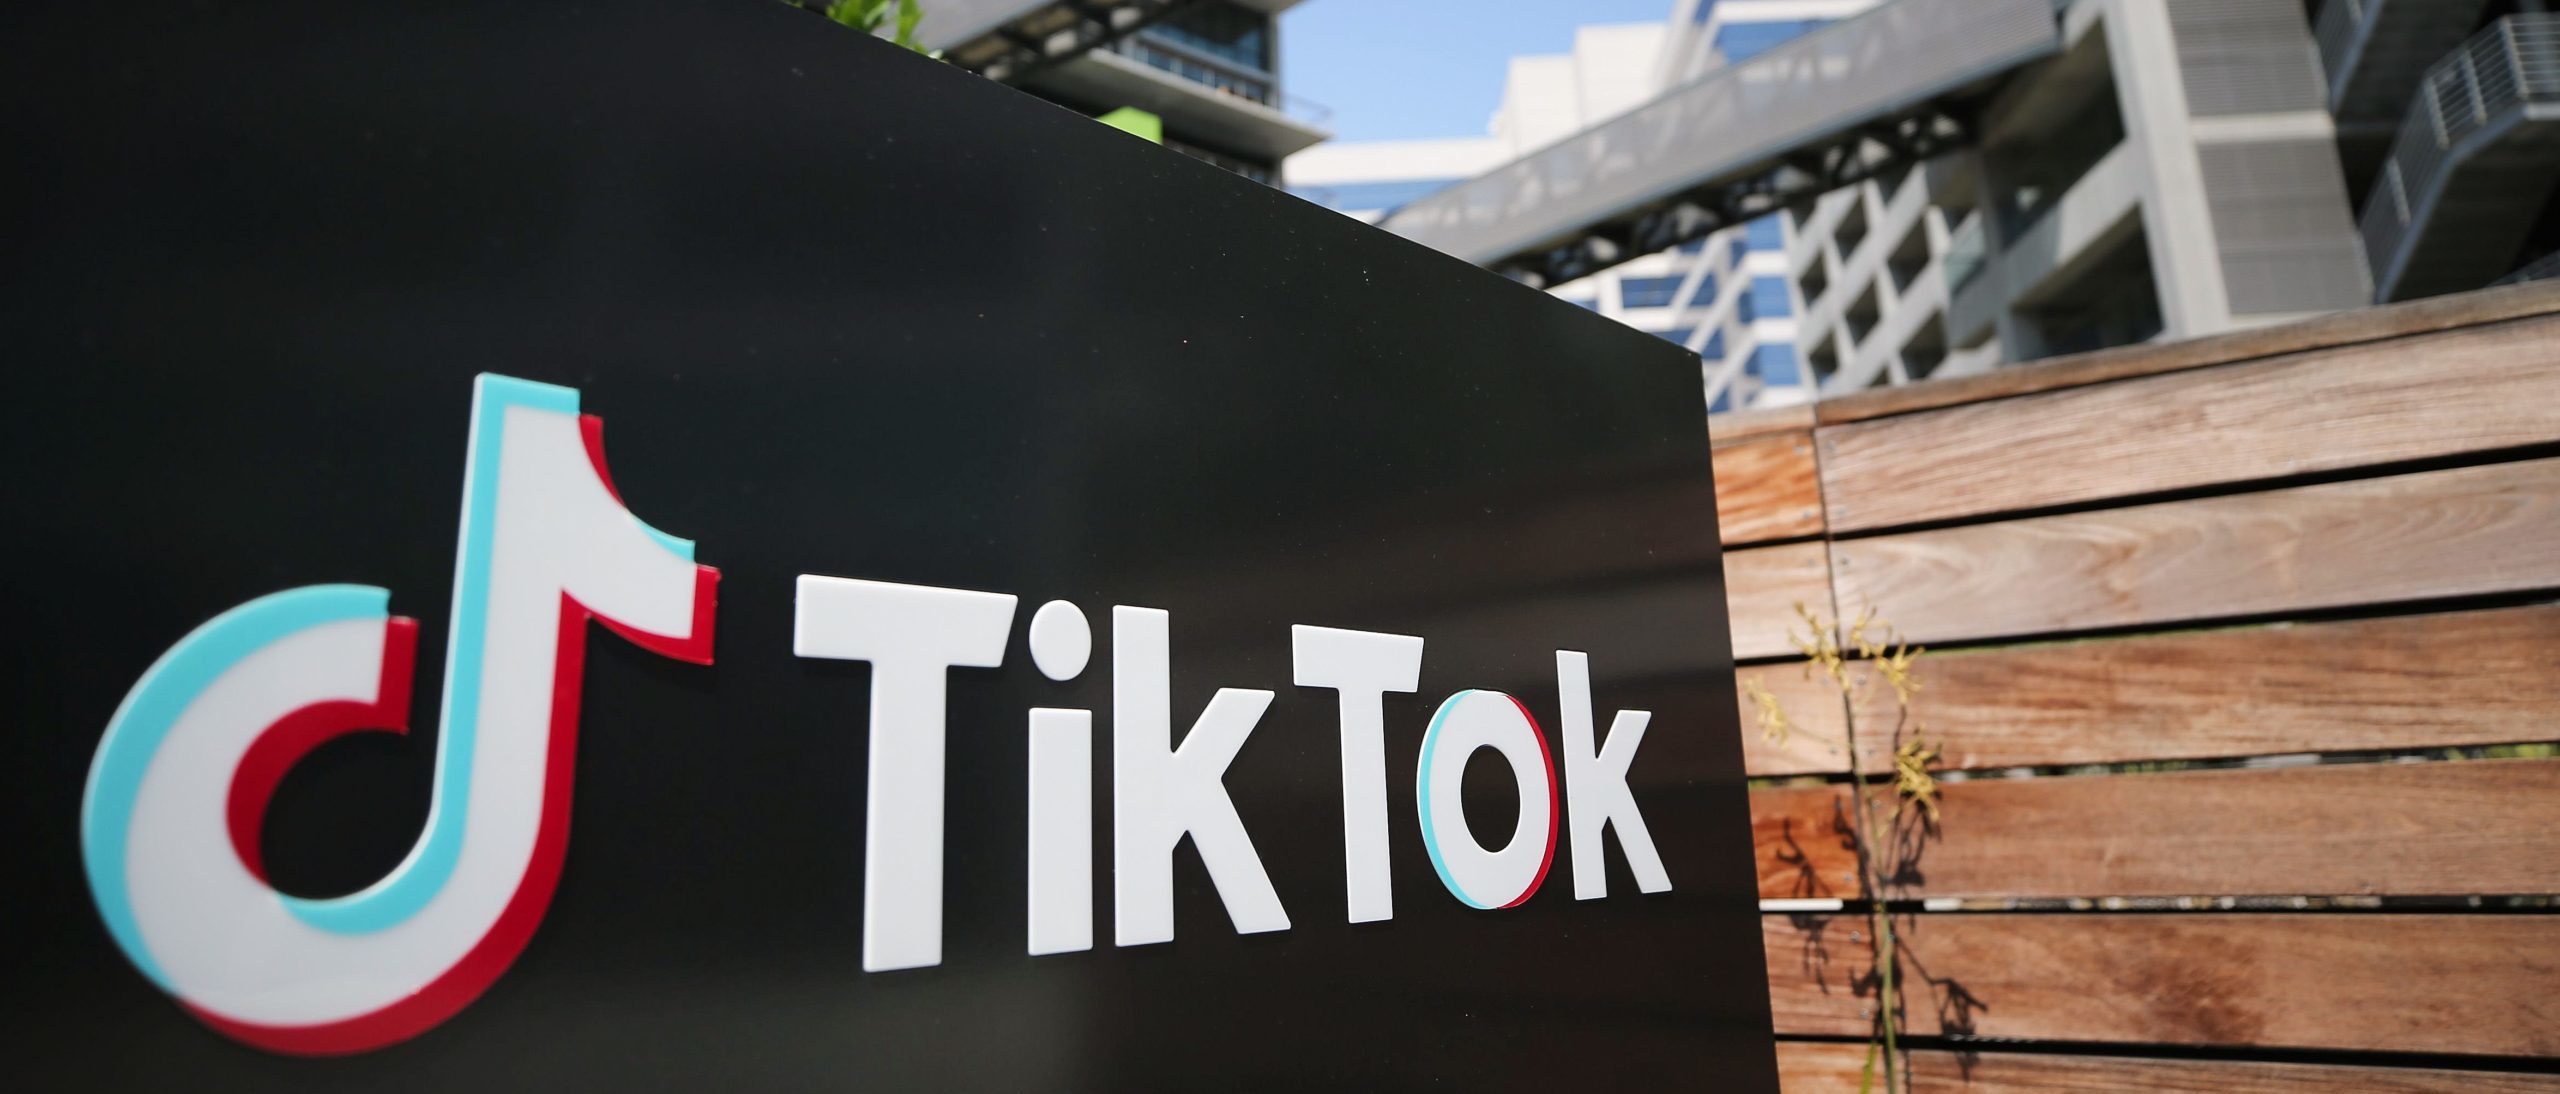 ‘Doble rasero descarado’: Activista pro-vida dice que TikTok la prohibió, prohibió los anuncios del grupo por ‘motivos políticos partidistas’